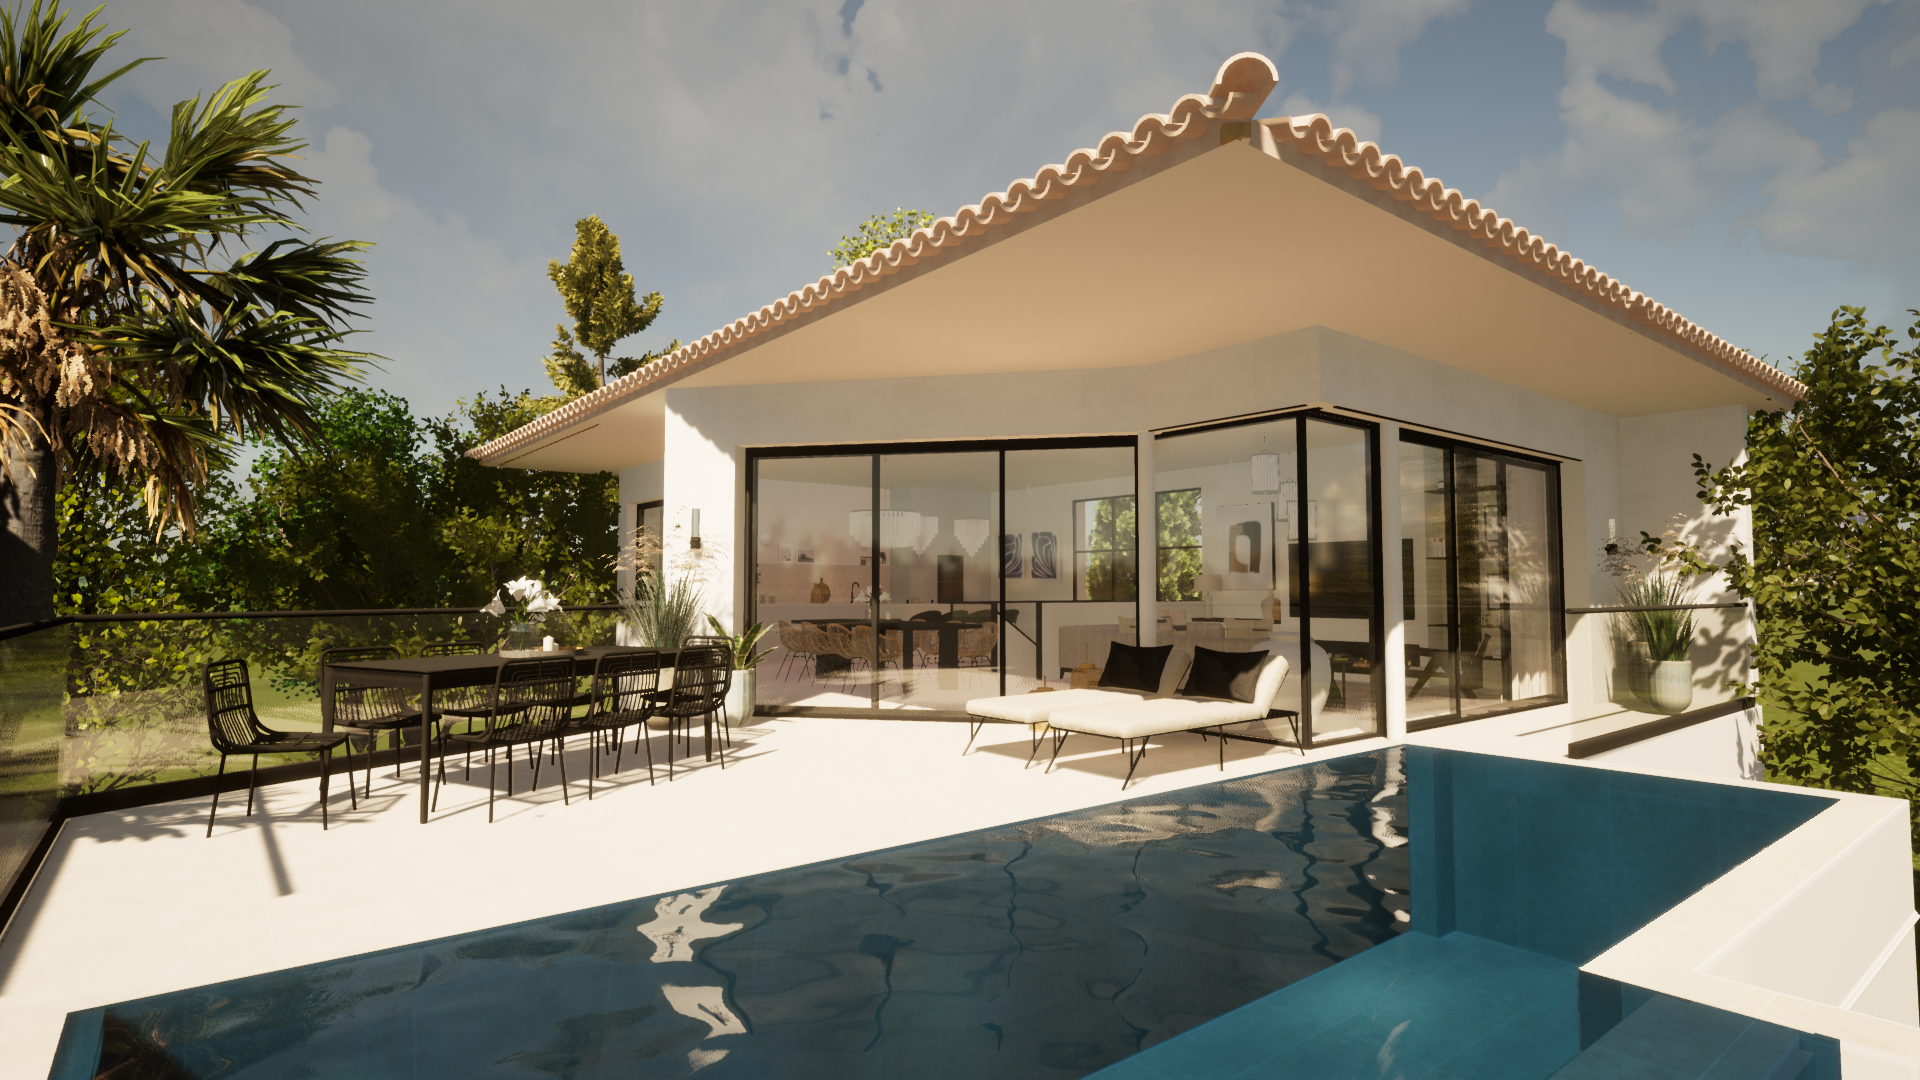 Belle maison d'architecte avec sa terrasse aménagée donnant sur une grande piscine à débordement.